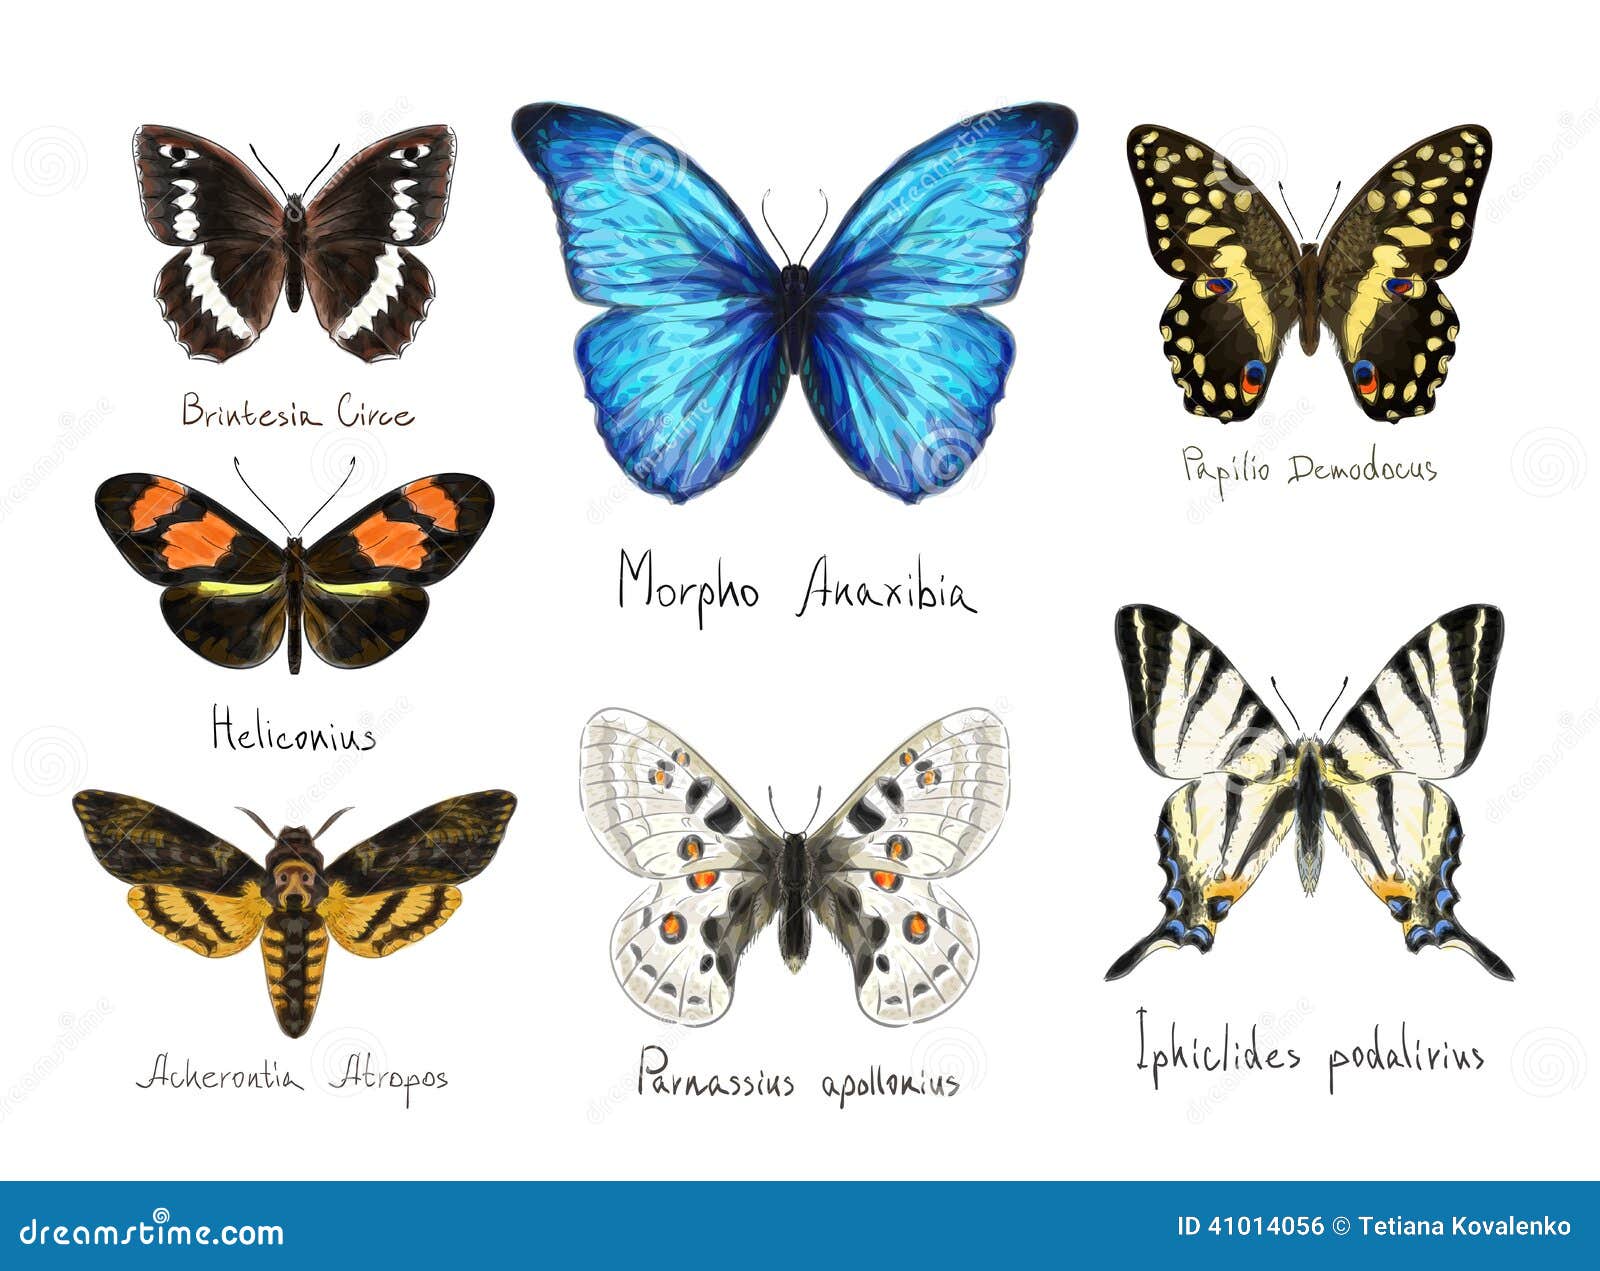 Какие имена бабочек. Названия бабочек с картинками латинске. Виды бабочек с названиями для детей. Названия бабочек на латинском. Как зовут всех бабочек.